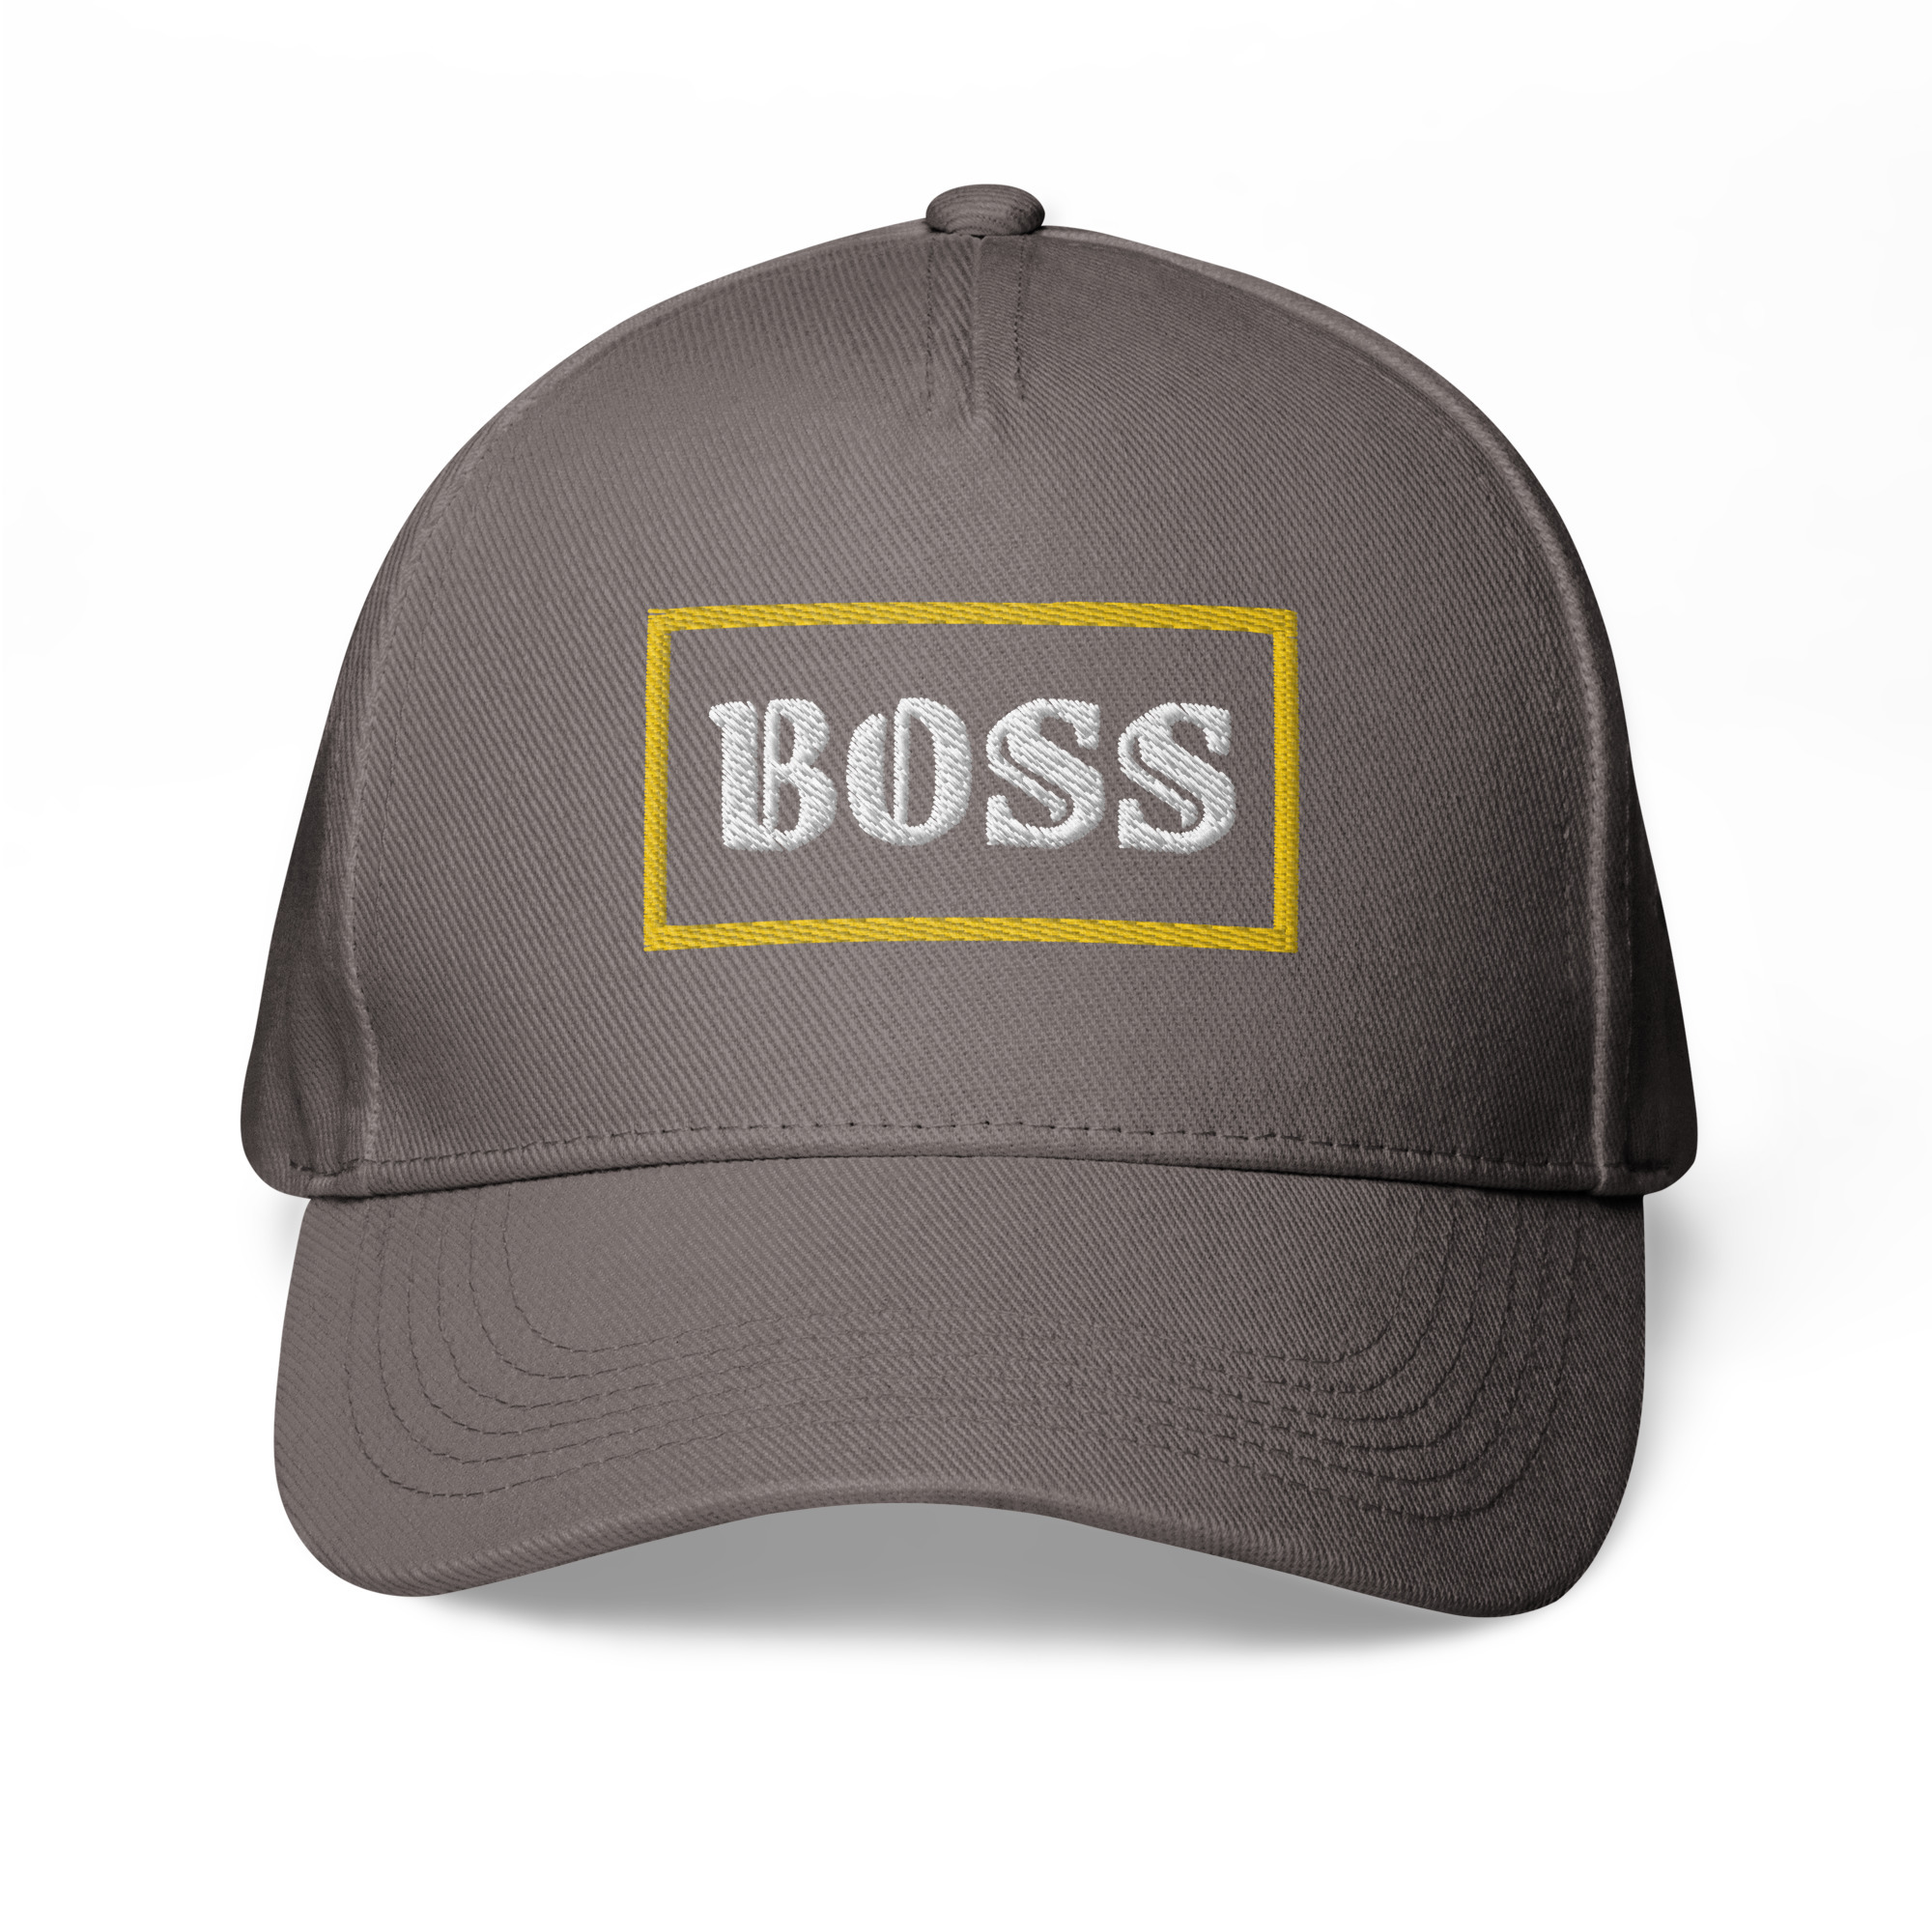 Boss on Classic baseball cap